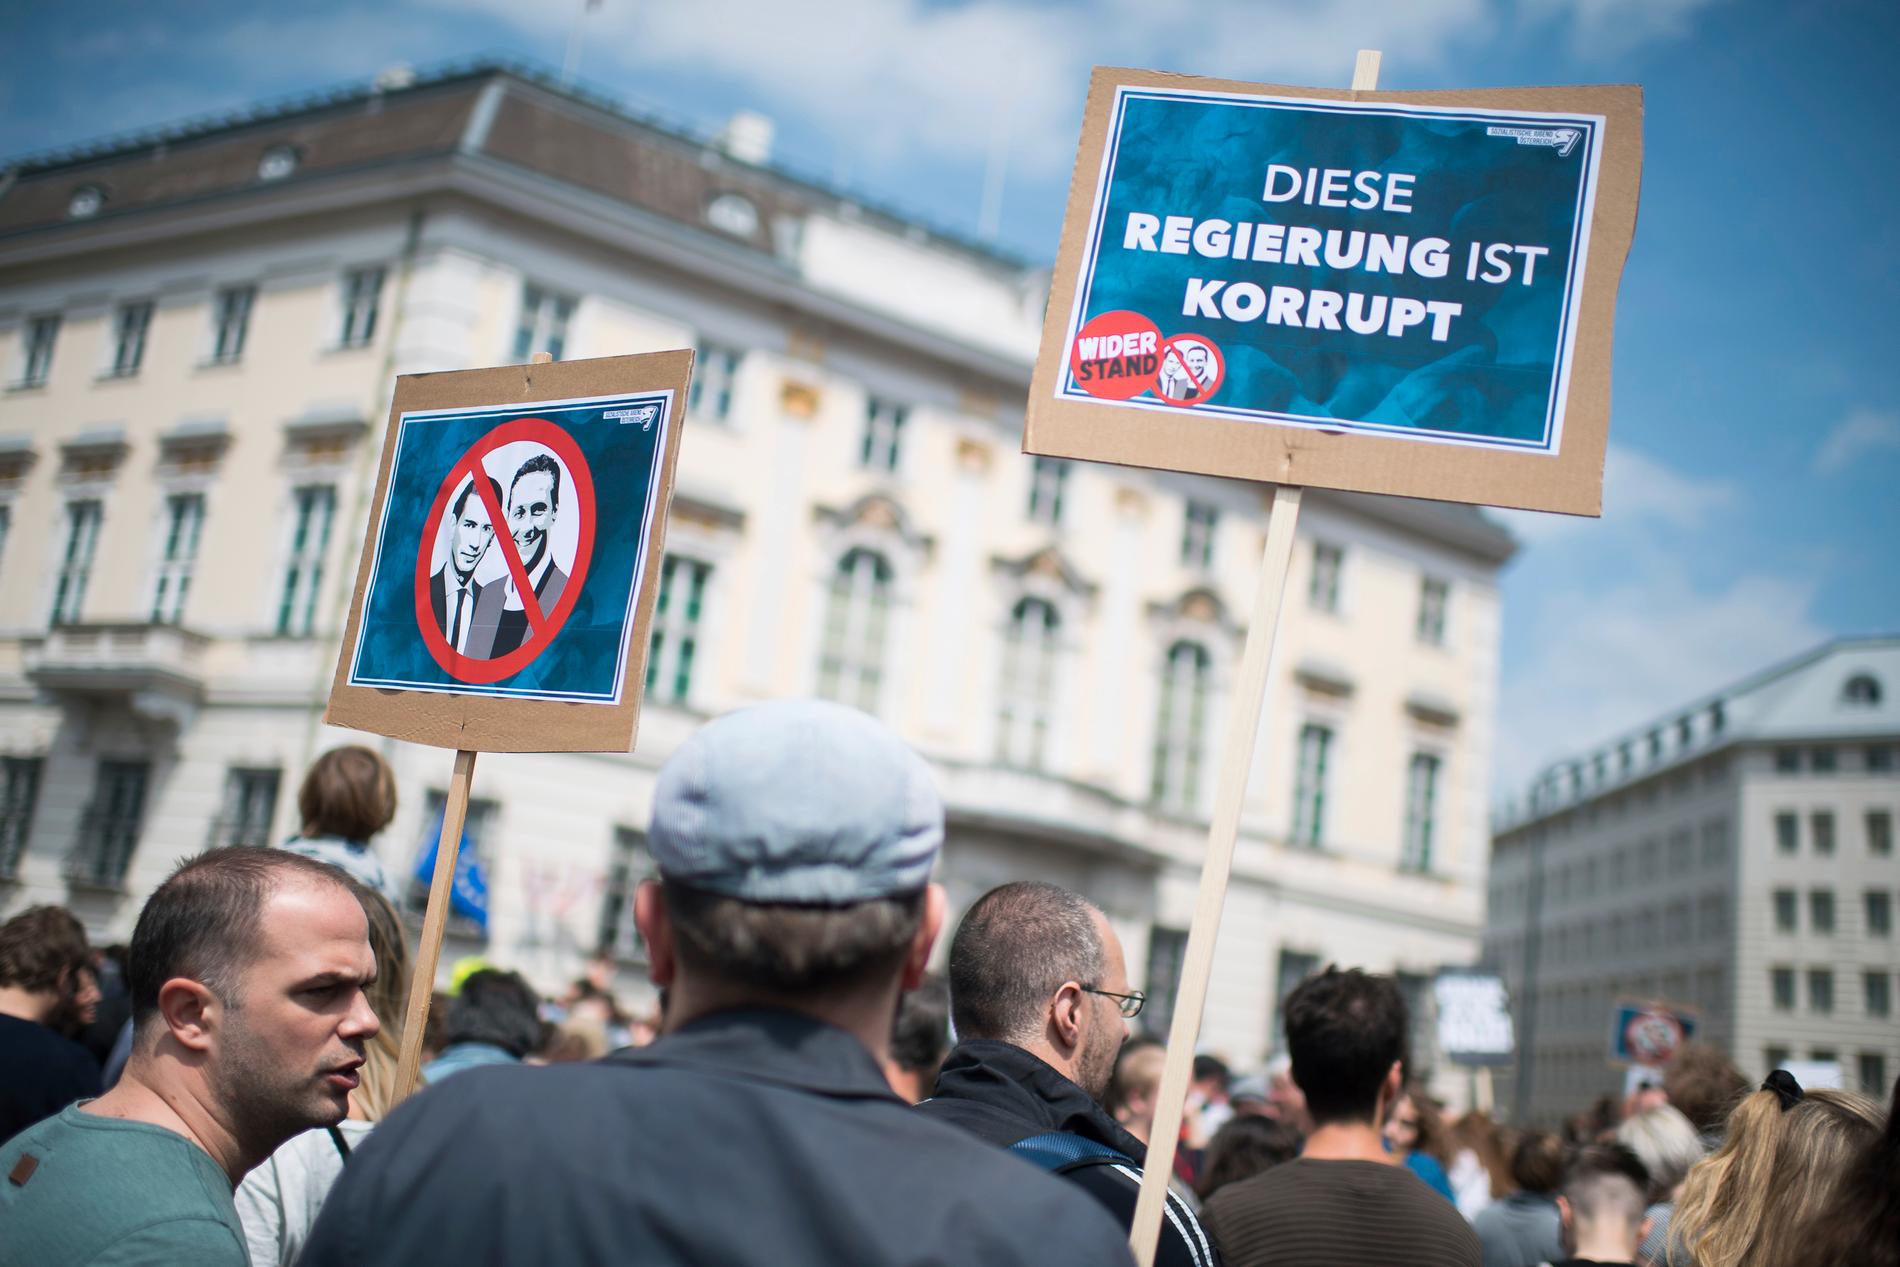 "Denna regering är korrupt", lyder ett budskap på en skylt vid demonstrationer i Wien.